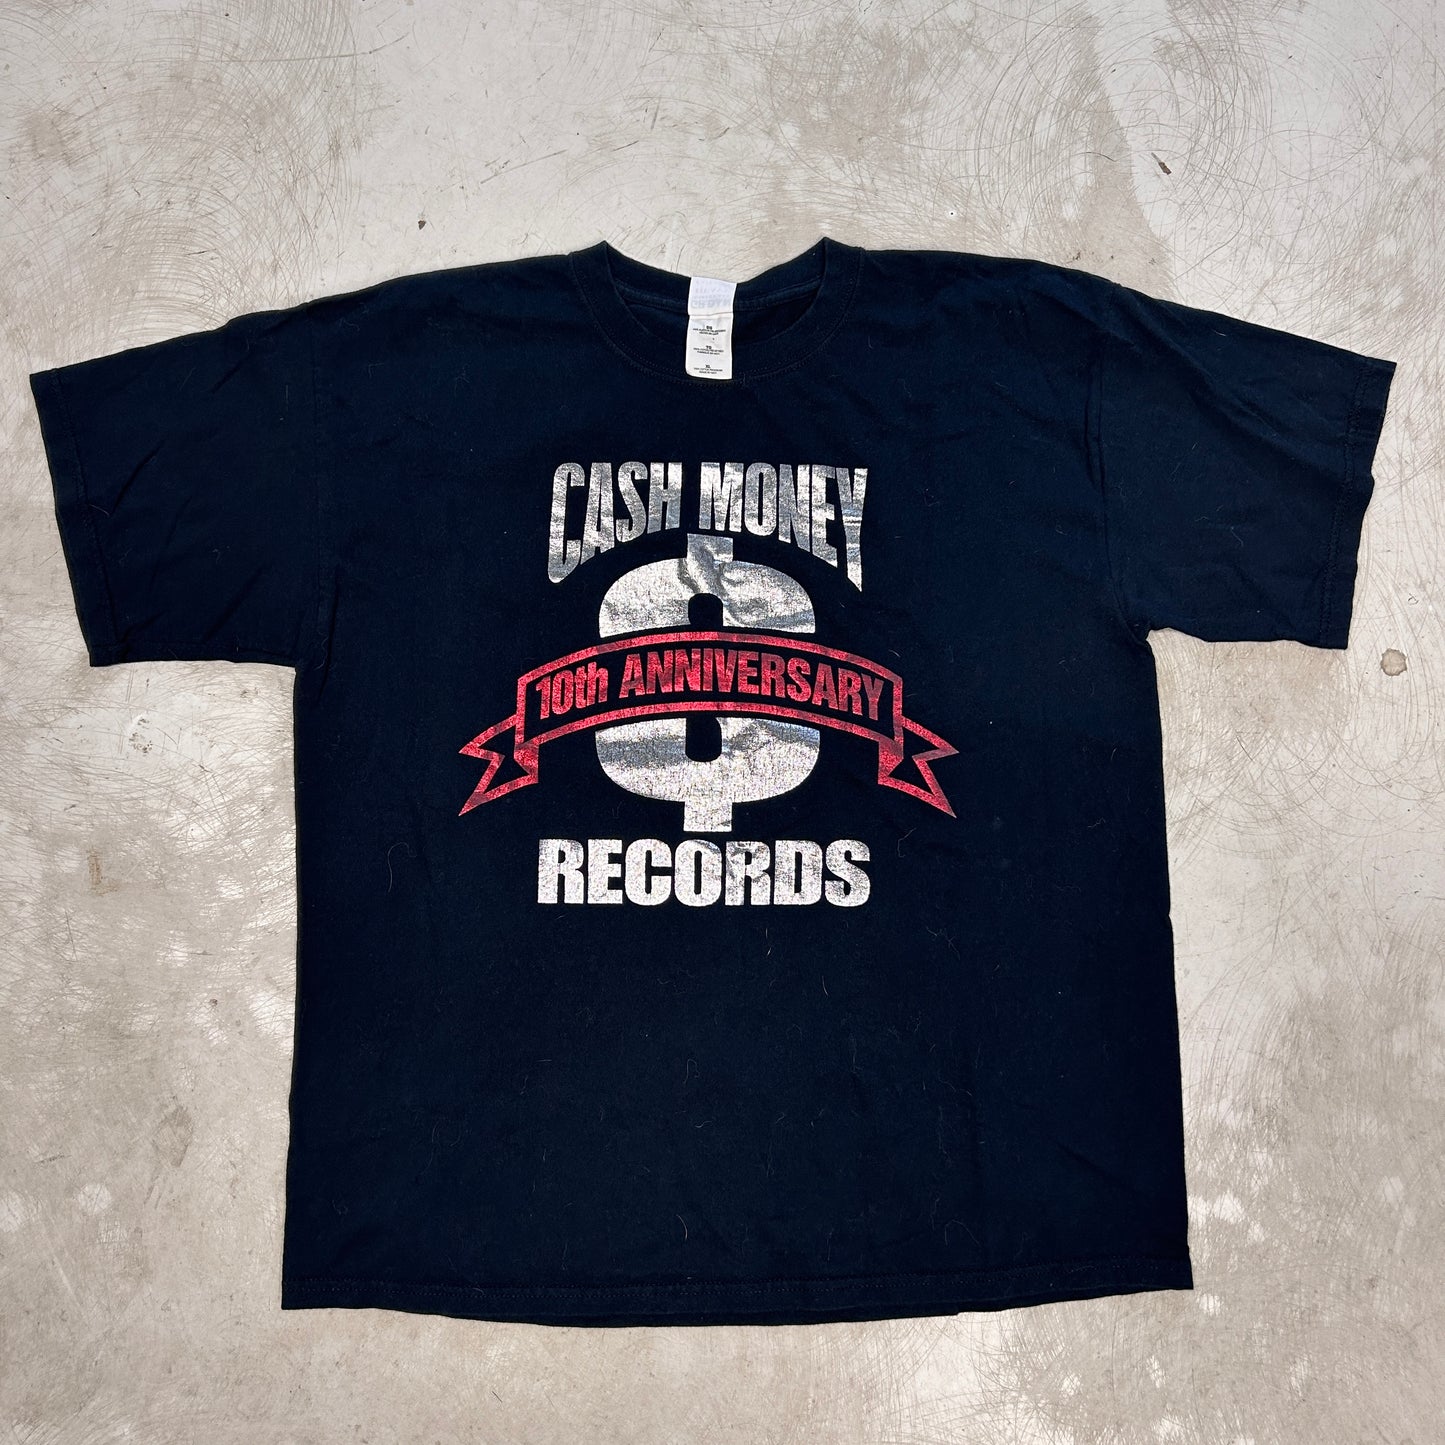 Cash Money Records T-Shirt